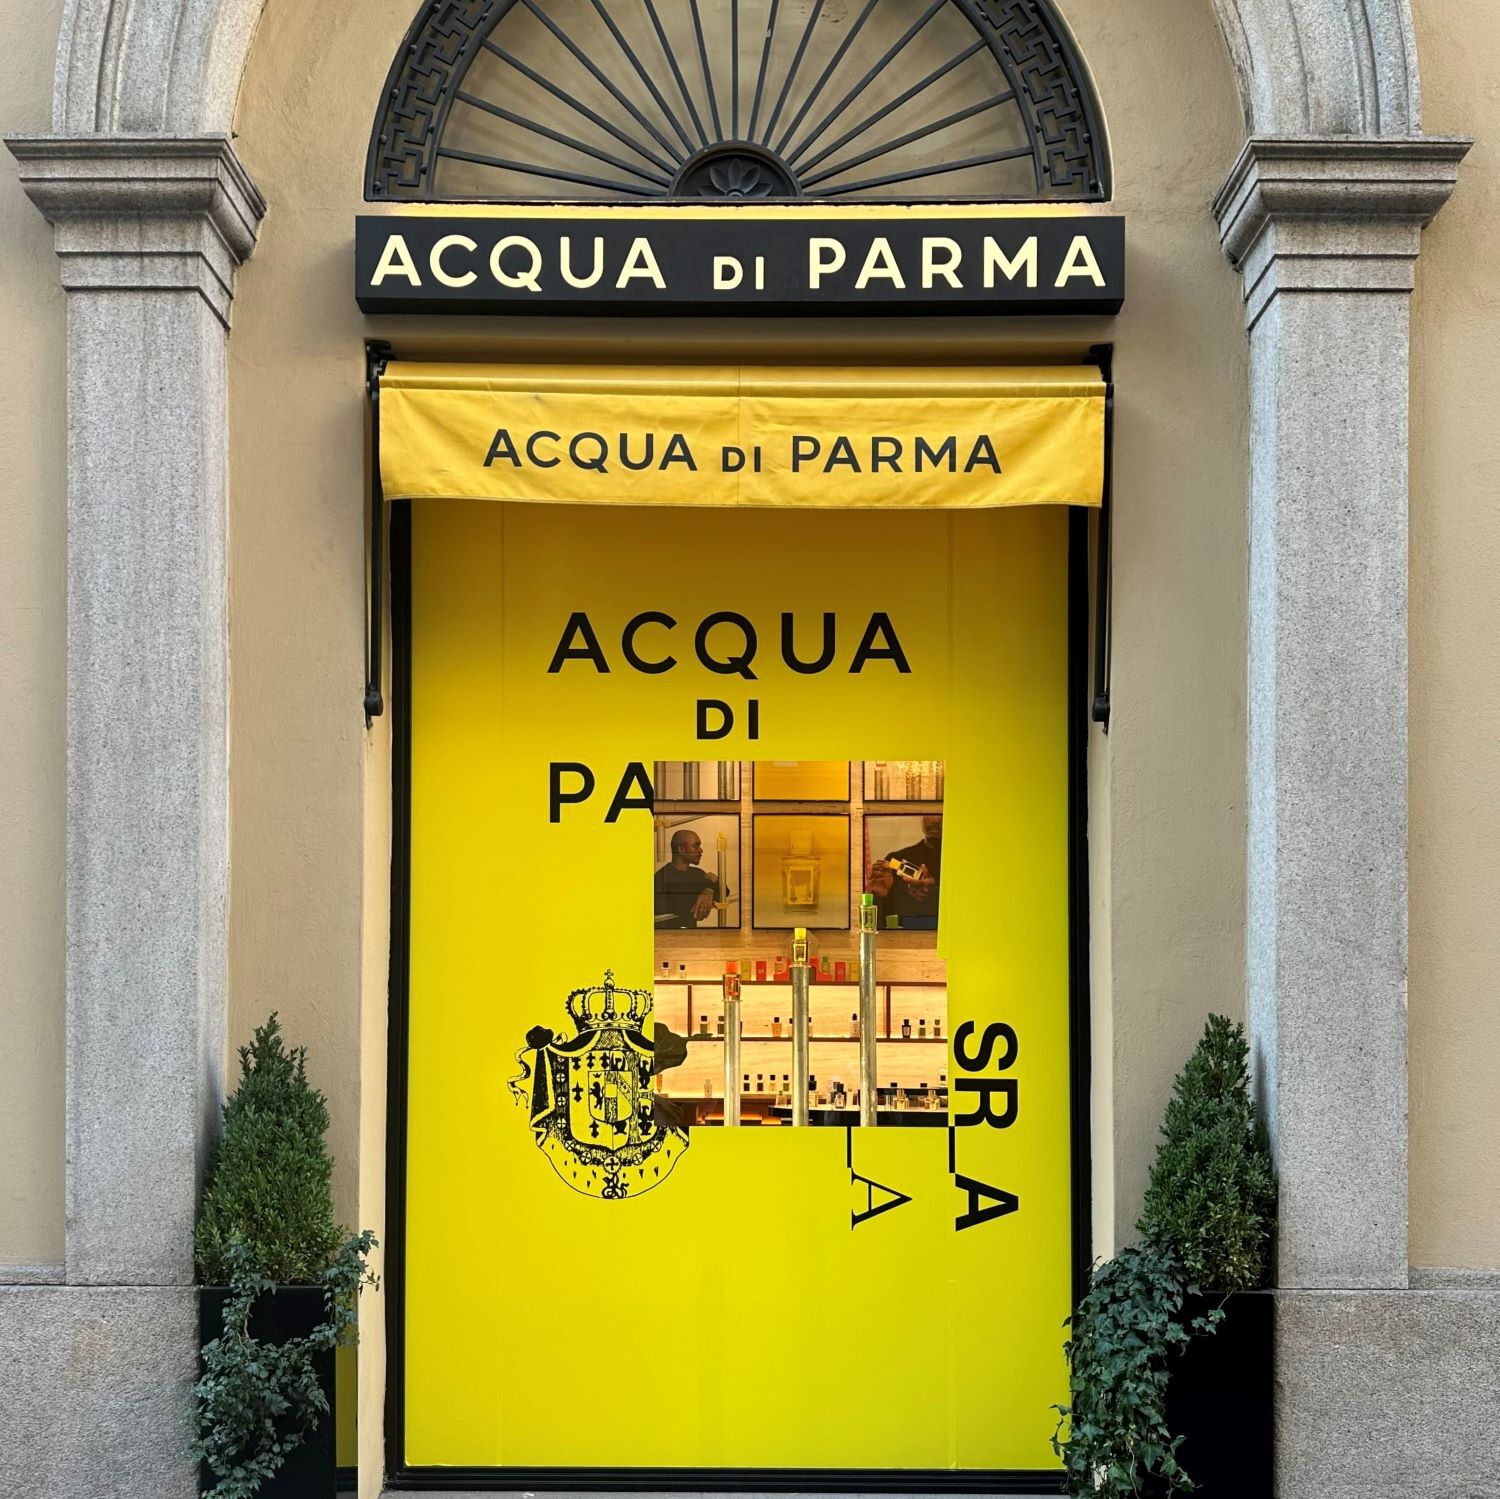 Acqua di Parma New Boutique in Rome